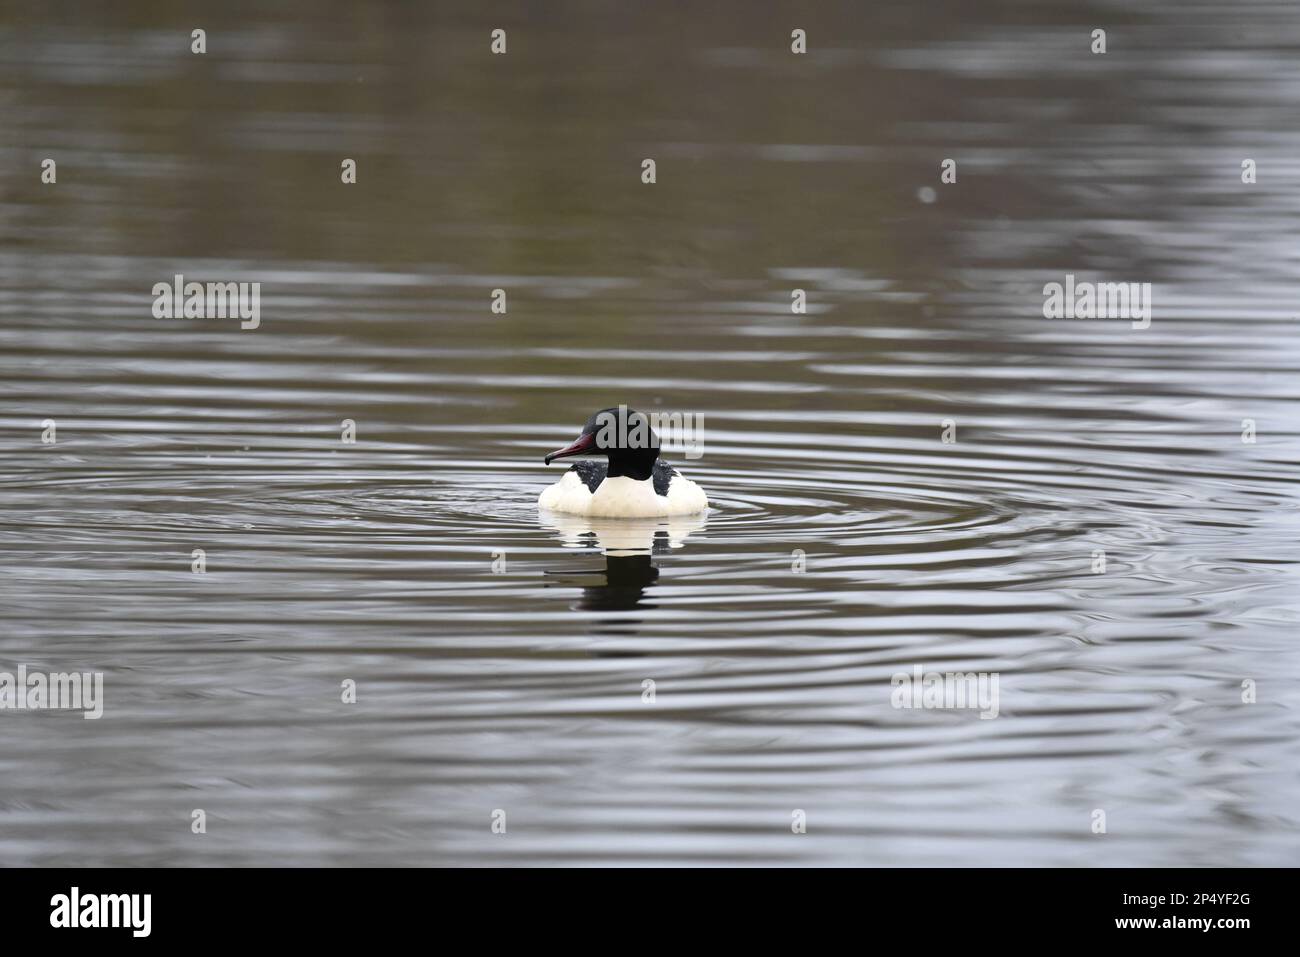 Männlicher Gänsehaut (Mergus Merganser) schwimmt im Februar in Richtung Kamera, Mitte des Bilds, auf einem gewellten See in Großbritannien Stockfoto